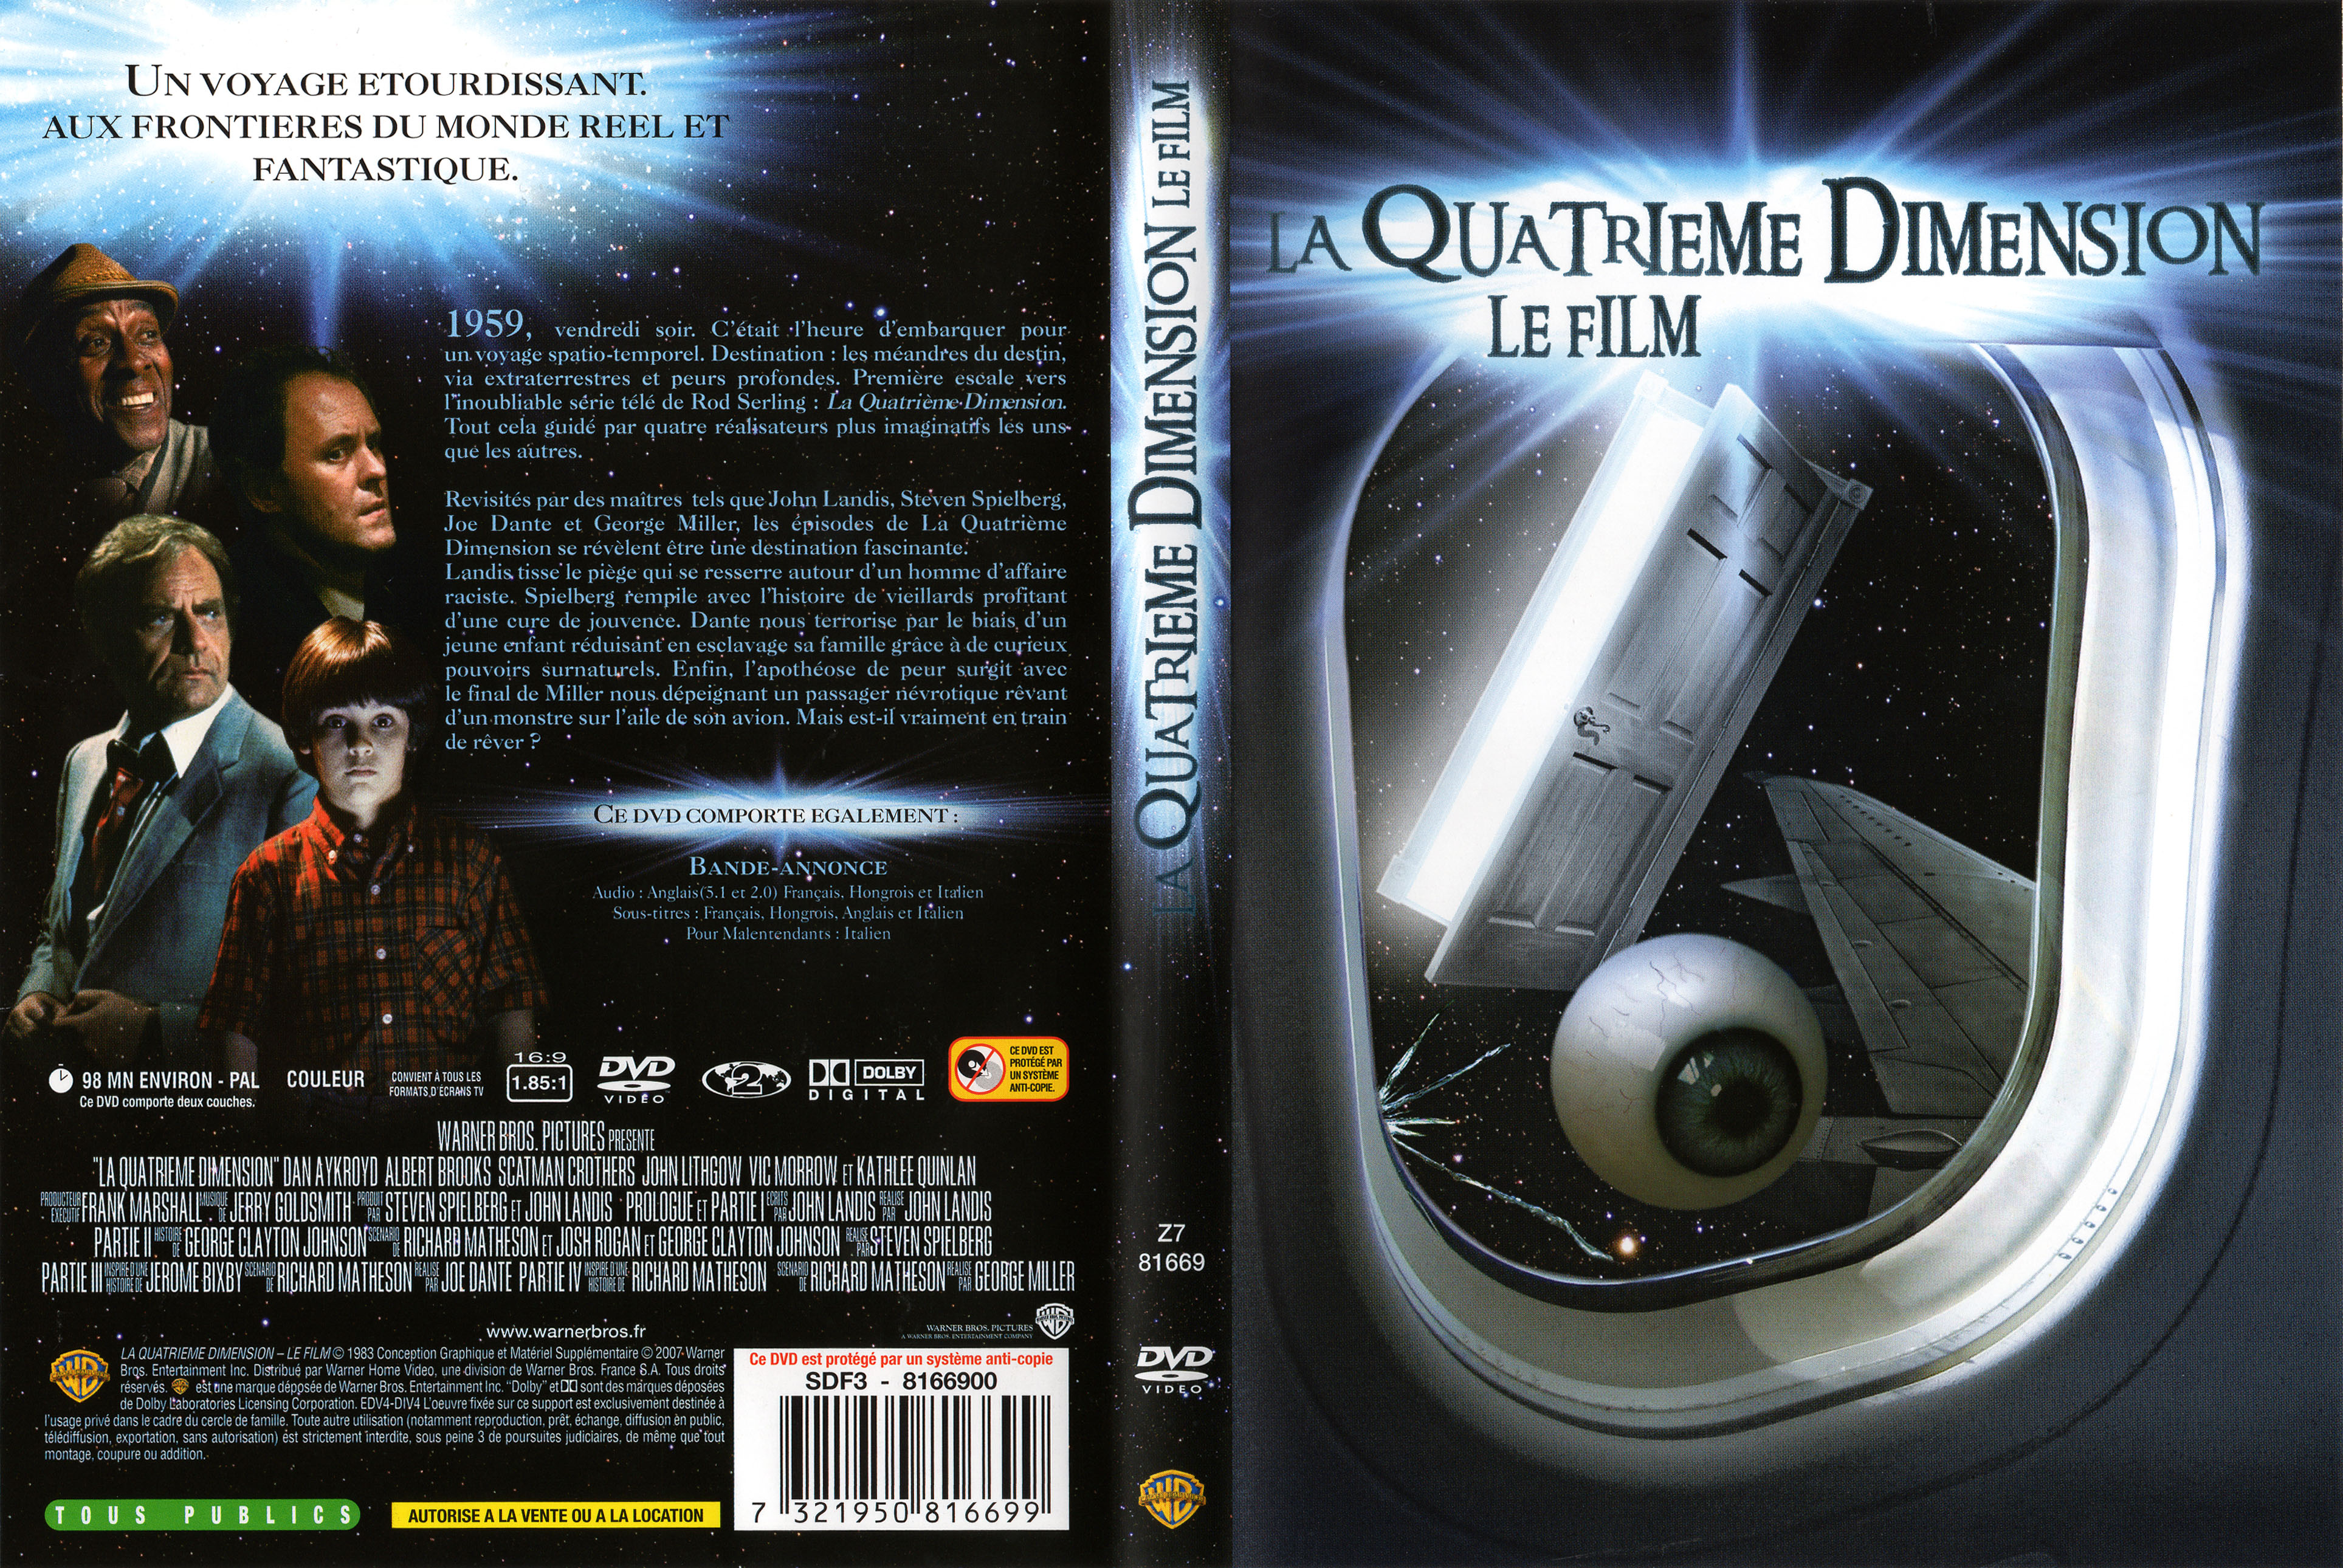 Jaquette DVD La quatrime dimension le film